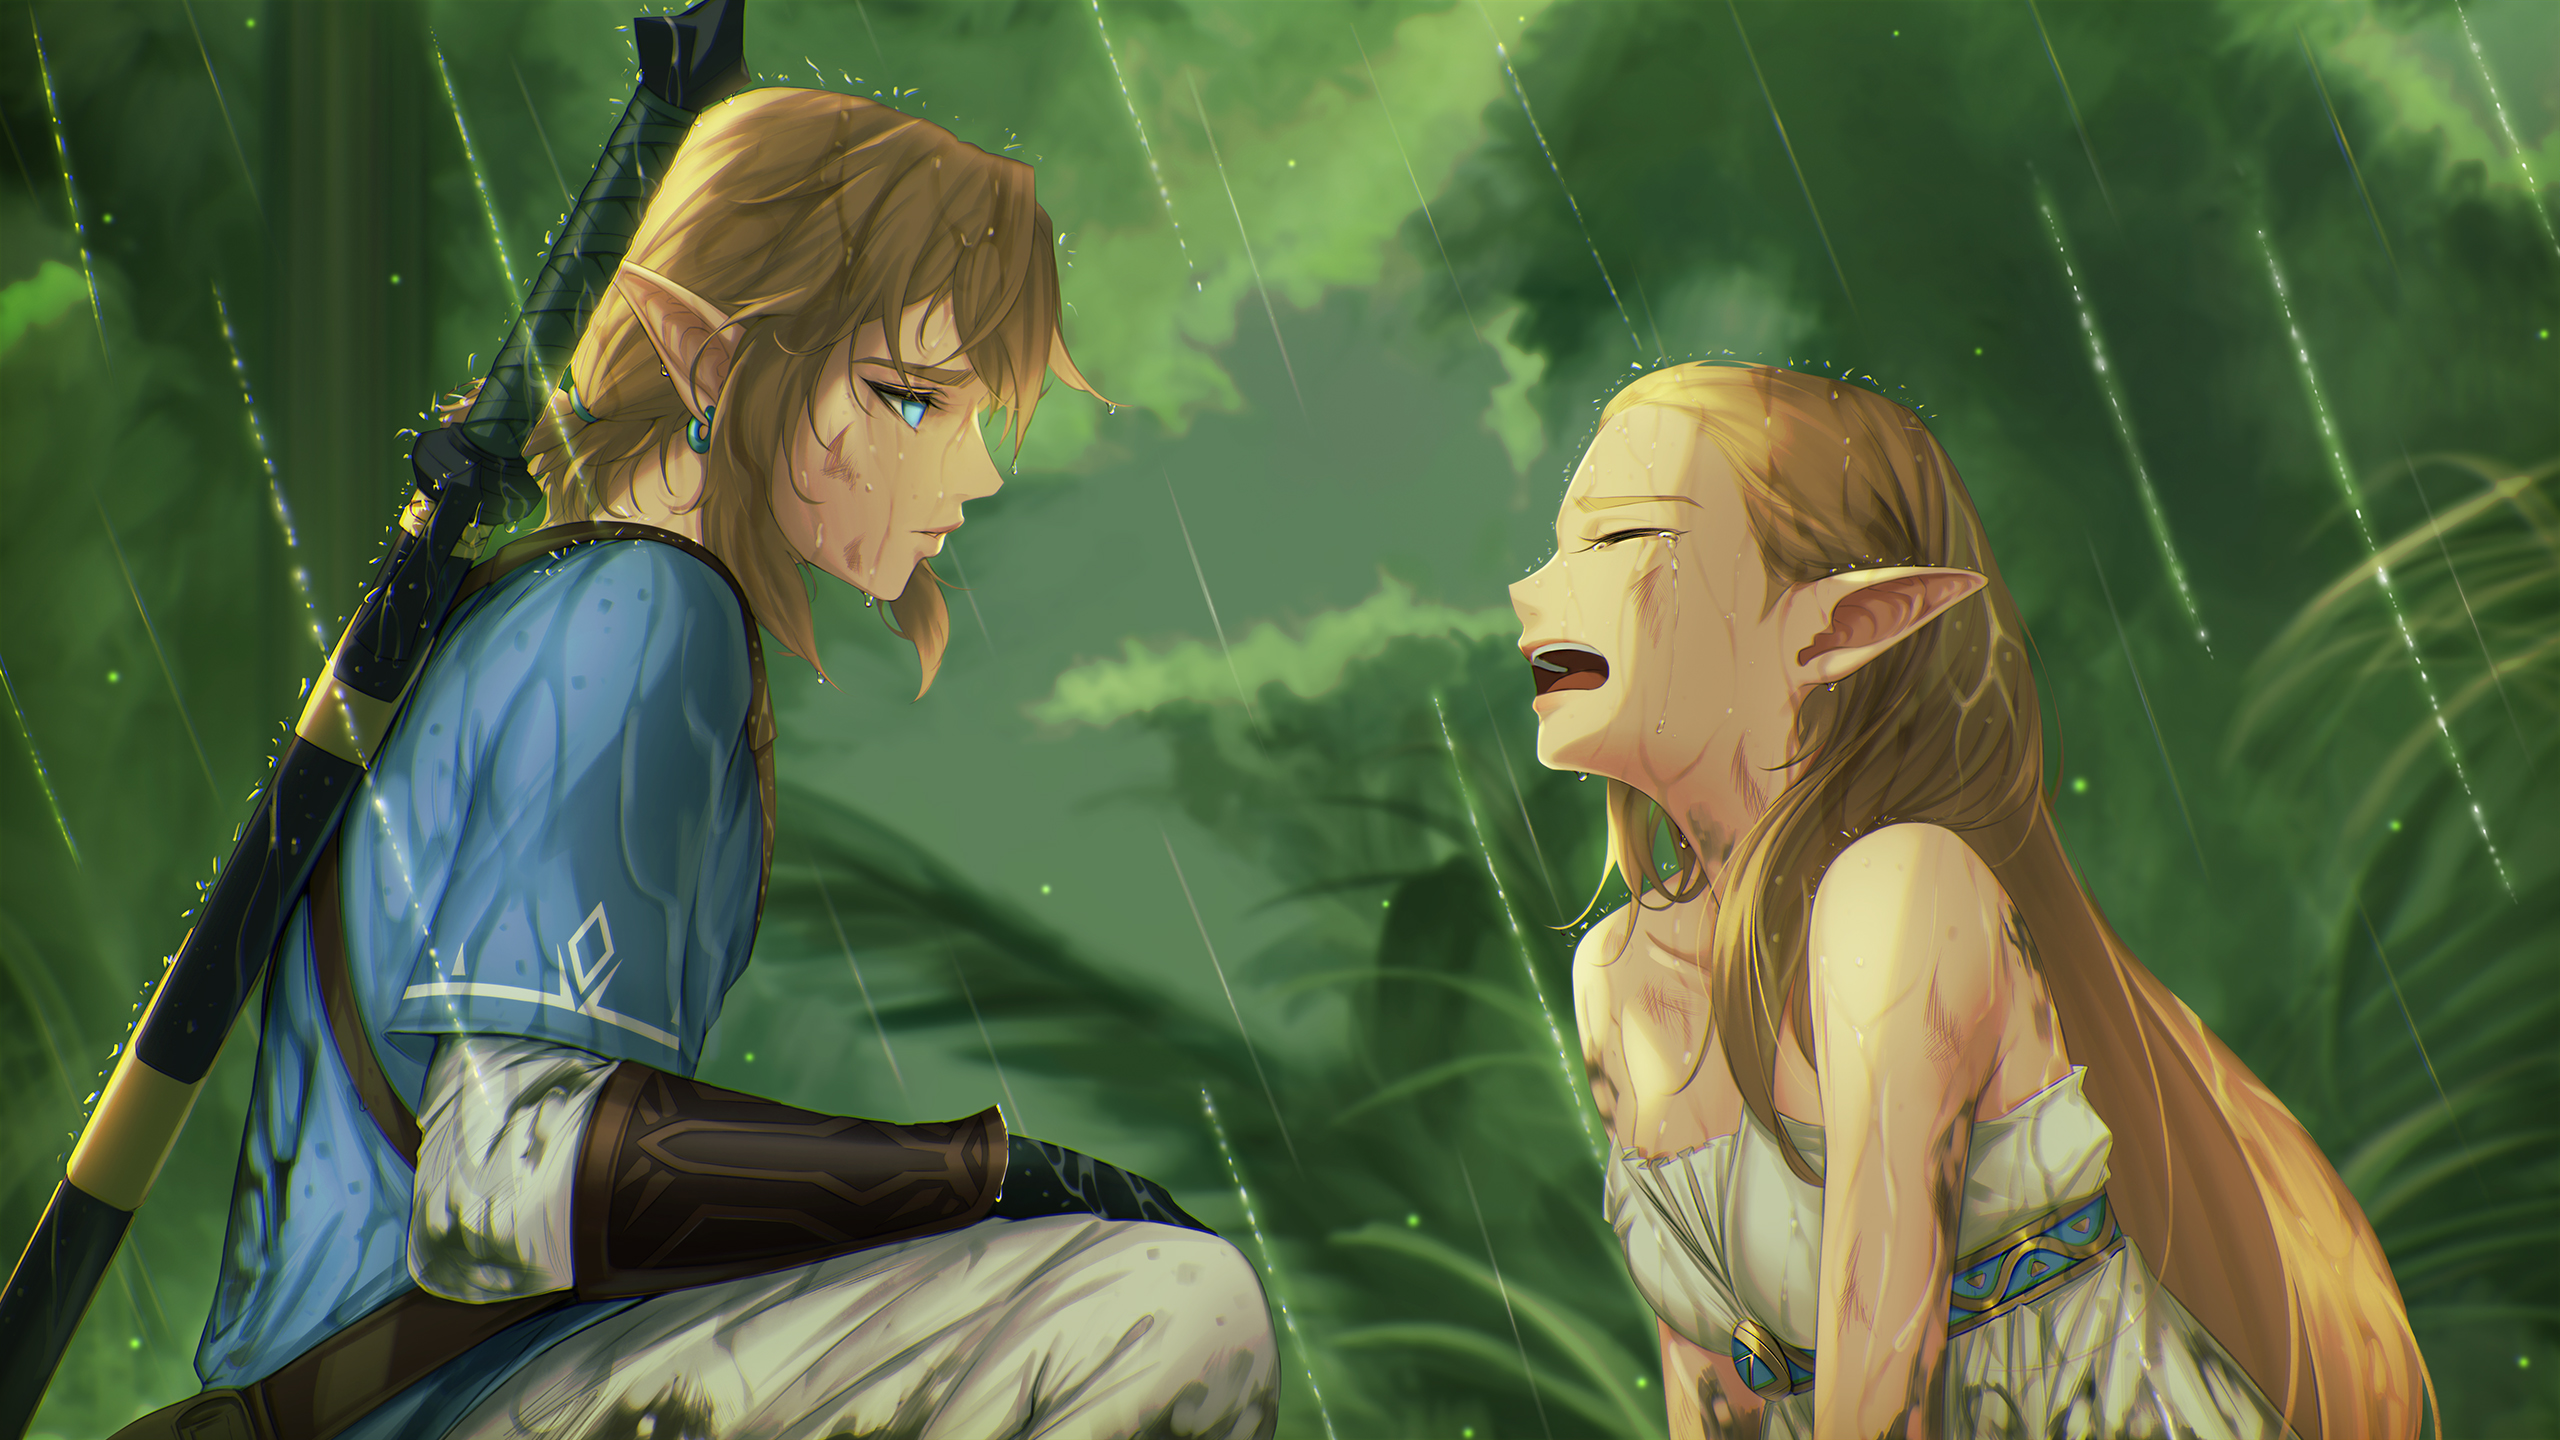 Anime 2560x1440 The Legend of Zelda The Legend of Zelda: Breath of the Wild Zelda Link Master Sword crying rain sword